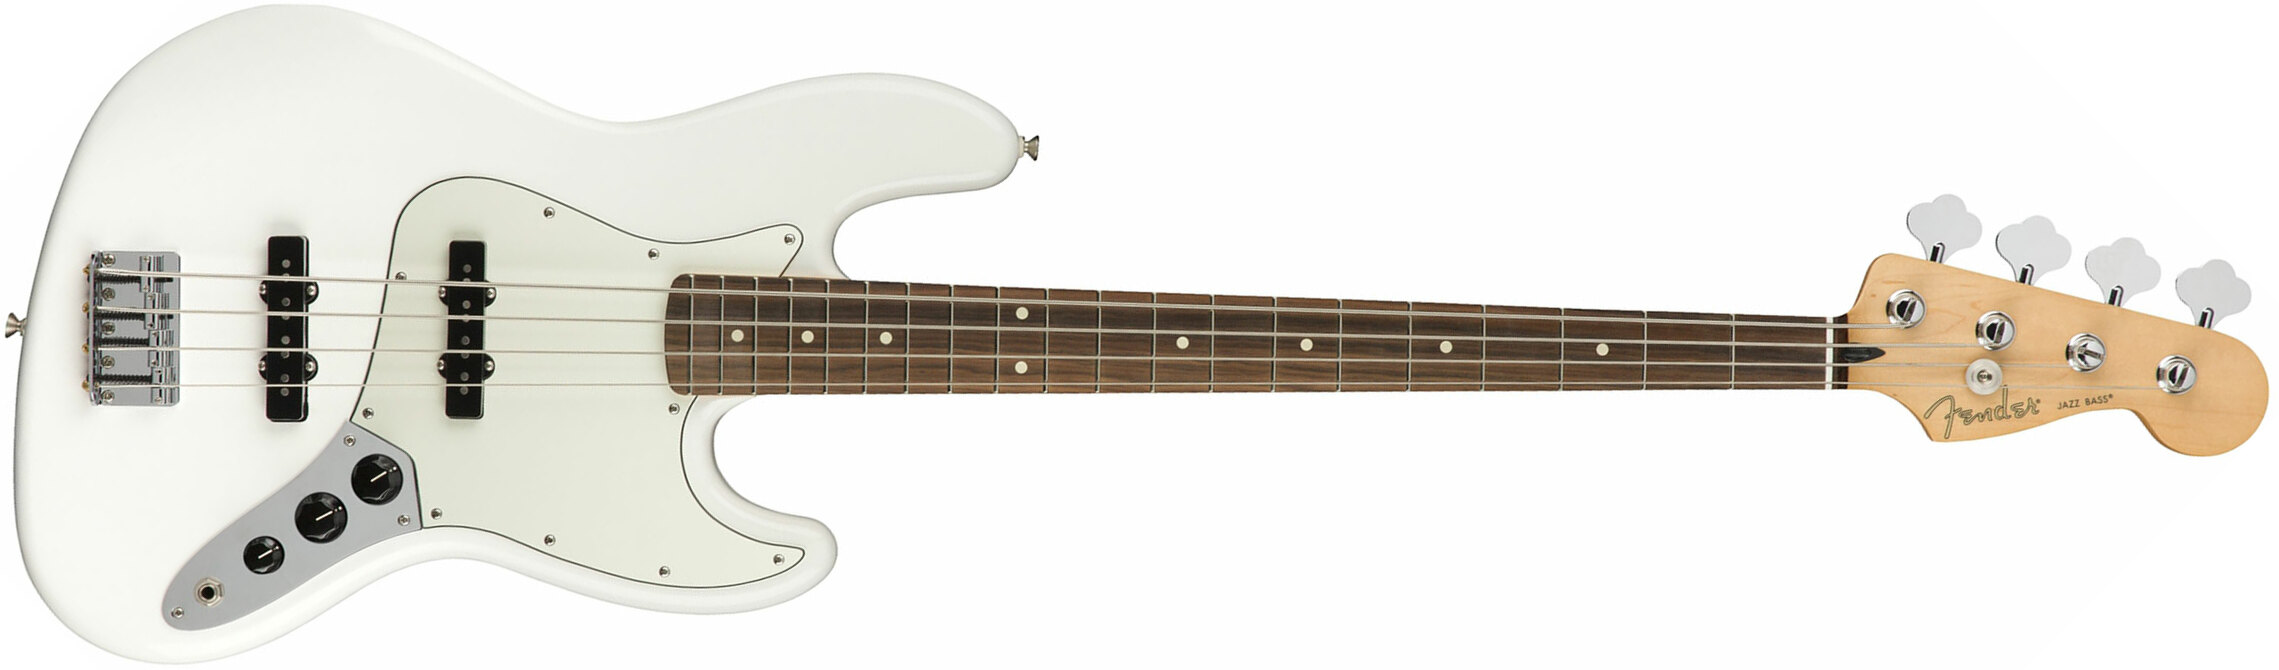 Fender Jazz Bass Player Mex Pf - Polar White - Solid body elektrische bas - Main picture